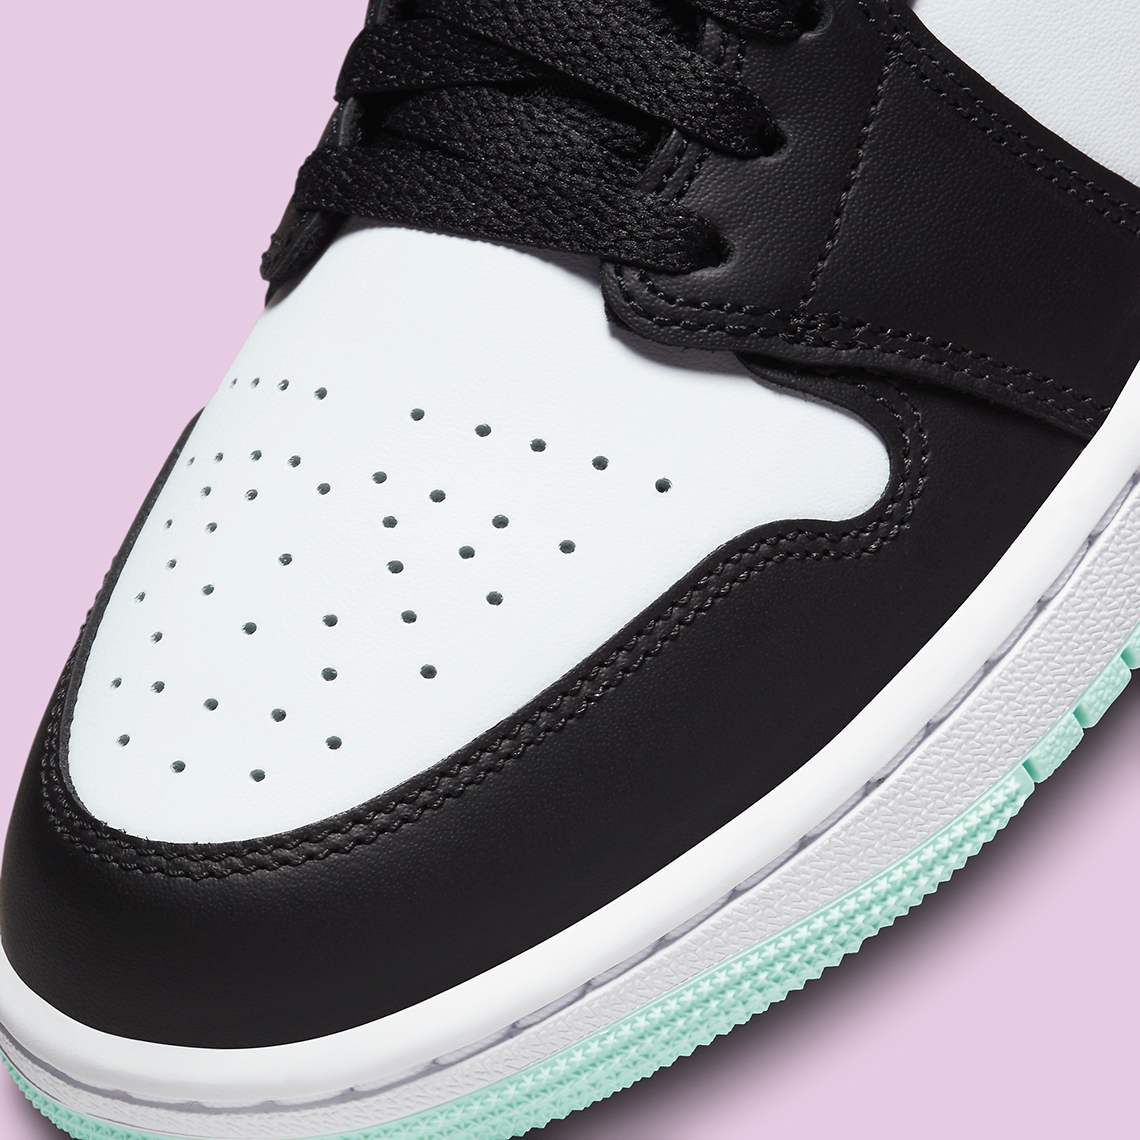 Air Jordan 1 Low Tie Dye Pastel Release Date 7